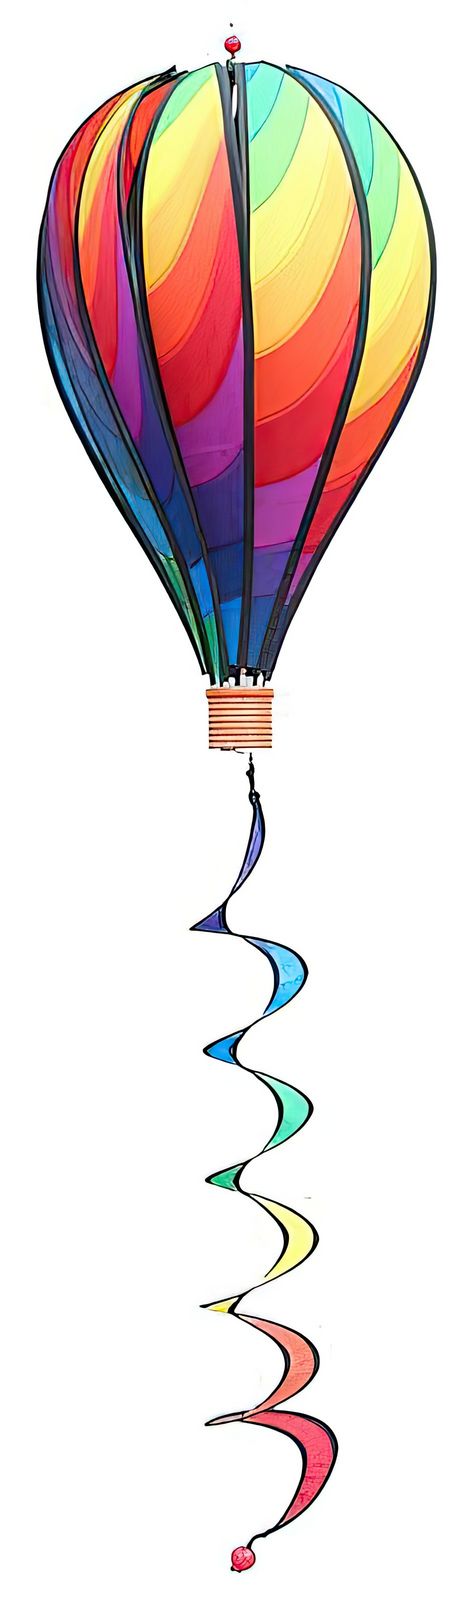 Windspiel hängend - Balloon - Wave 50 x 28 cm (Ballon) 5 x 5.5 cm-/bilder/big/1015470_1.jpg